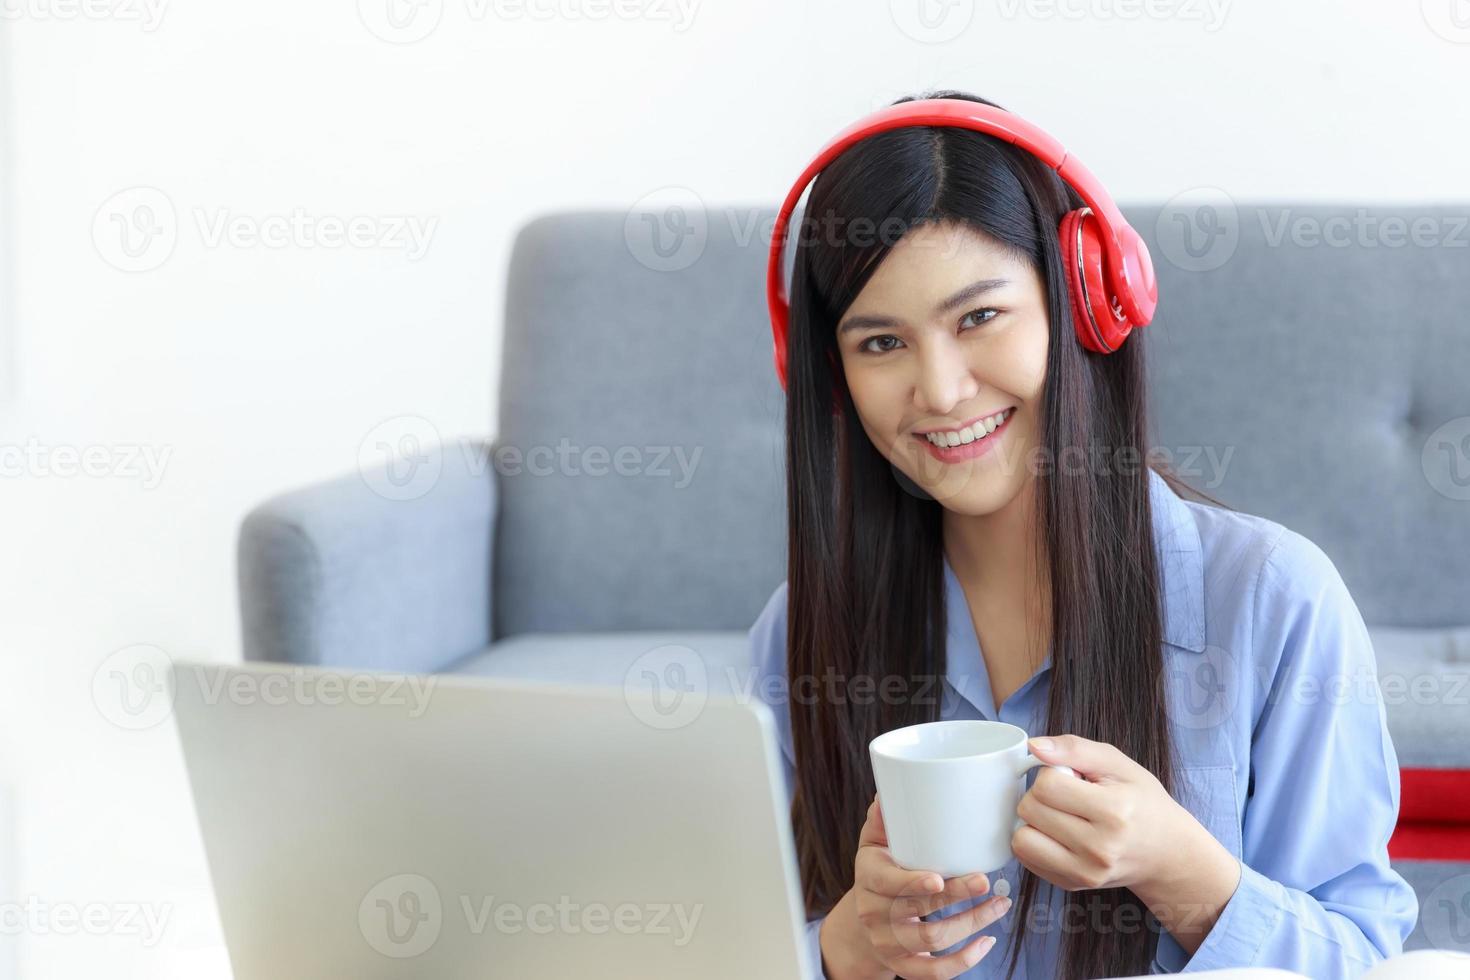 una mujer asiática con una cara sonriente sostiene una taza de café en la mano y disfruta con una computadora portátil en la sala de estar de su casa. foto